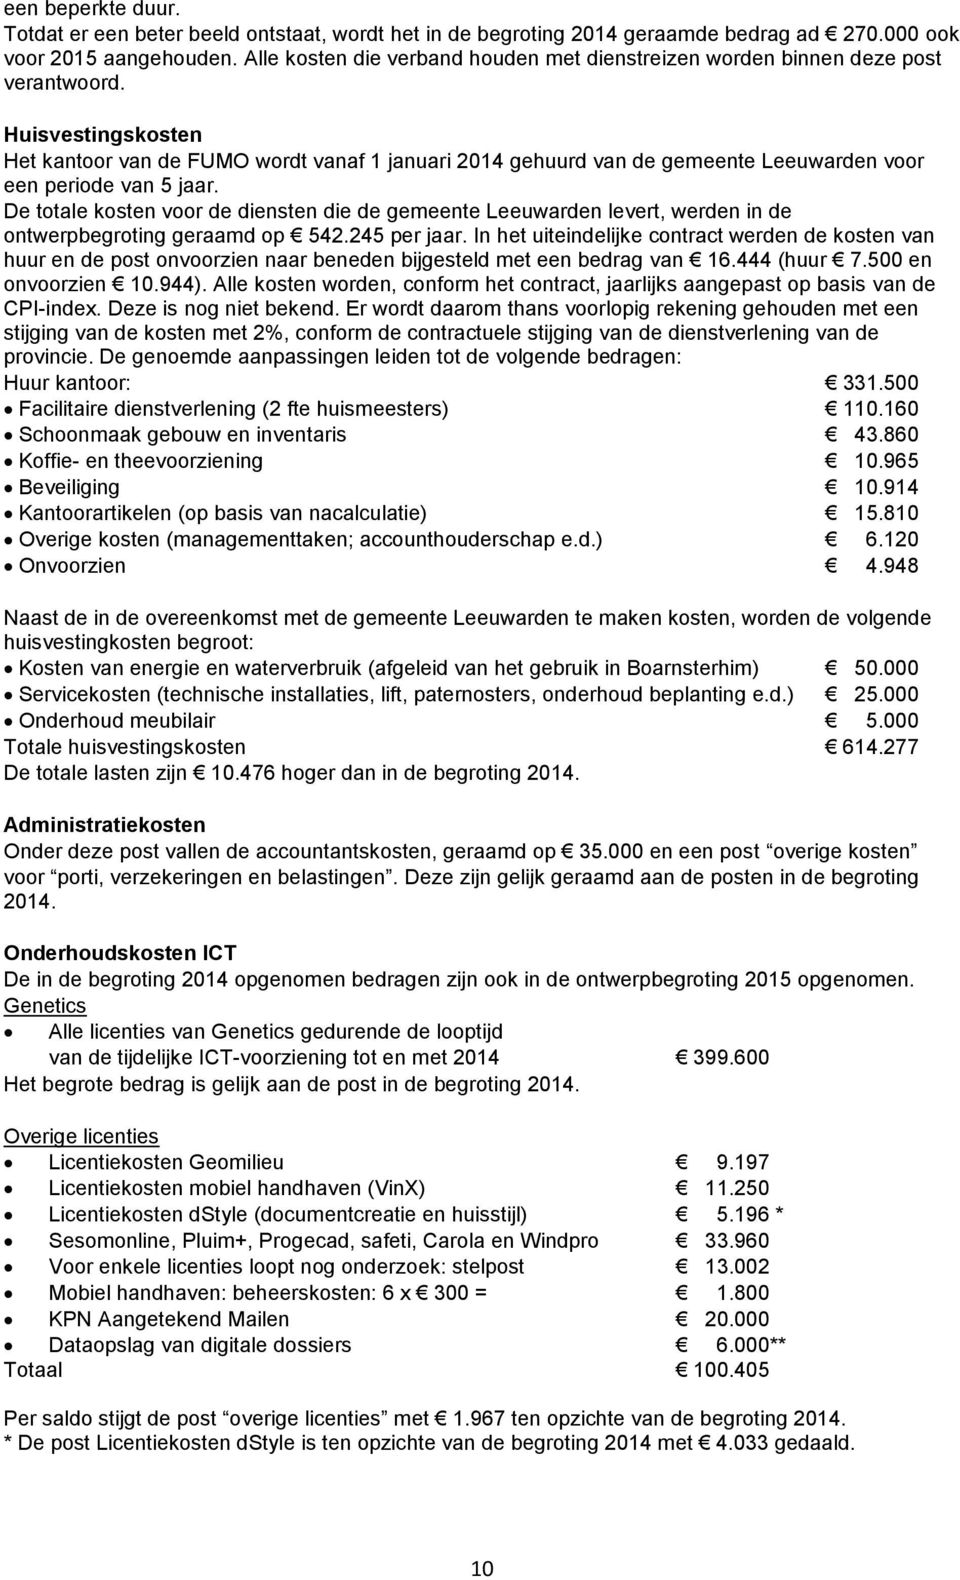 Huisvestingskosten Het kantoor van de FUMO wordt vanaf 1 januari 2014 gehuurd van de gemeente Leeuwarden voor een periode van 5 jaar.